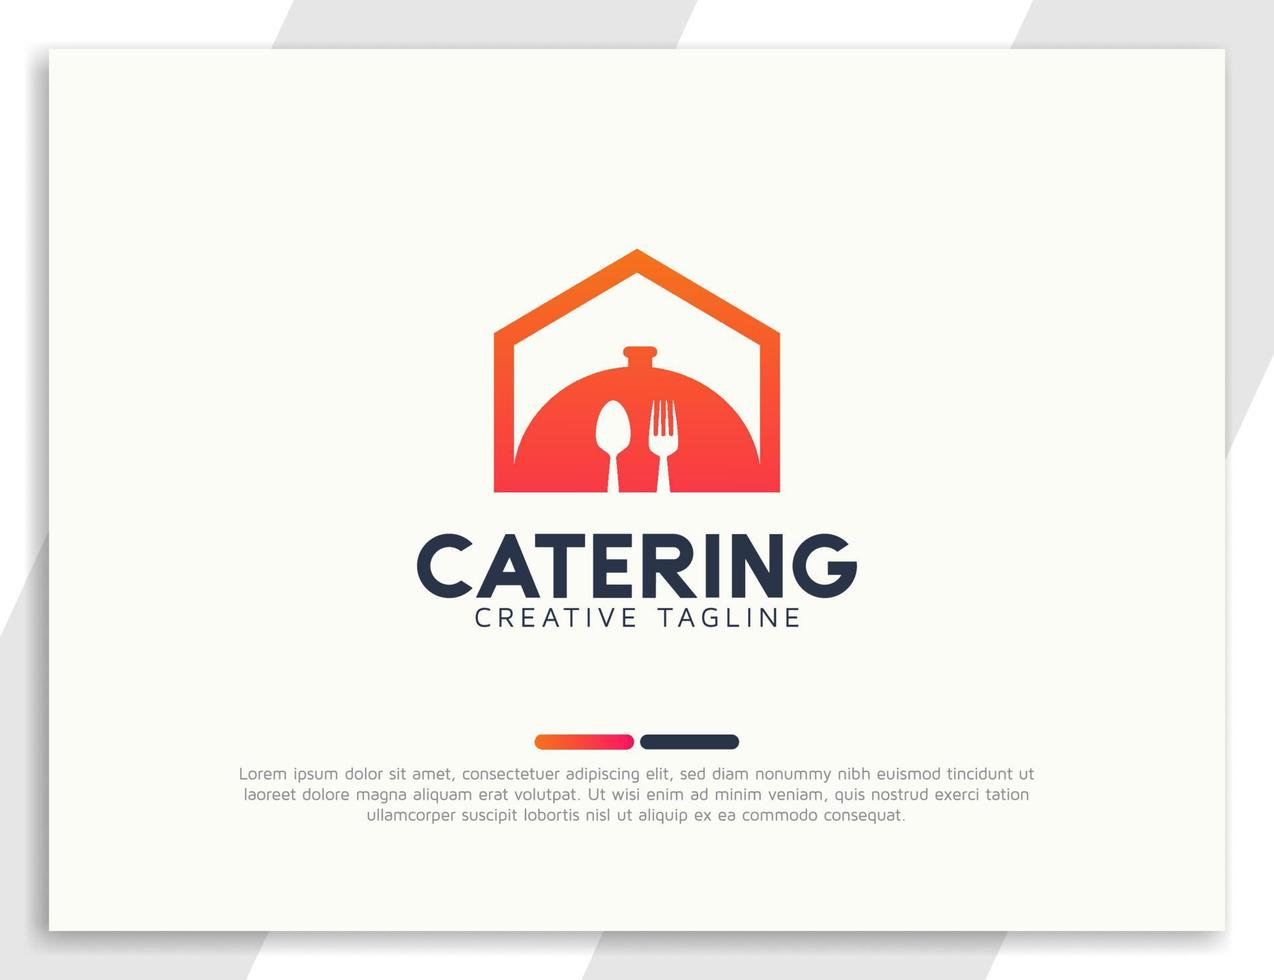 logo di ristorante o catering per la casa con forchetta e cucchiaio vettore